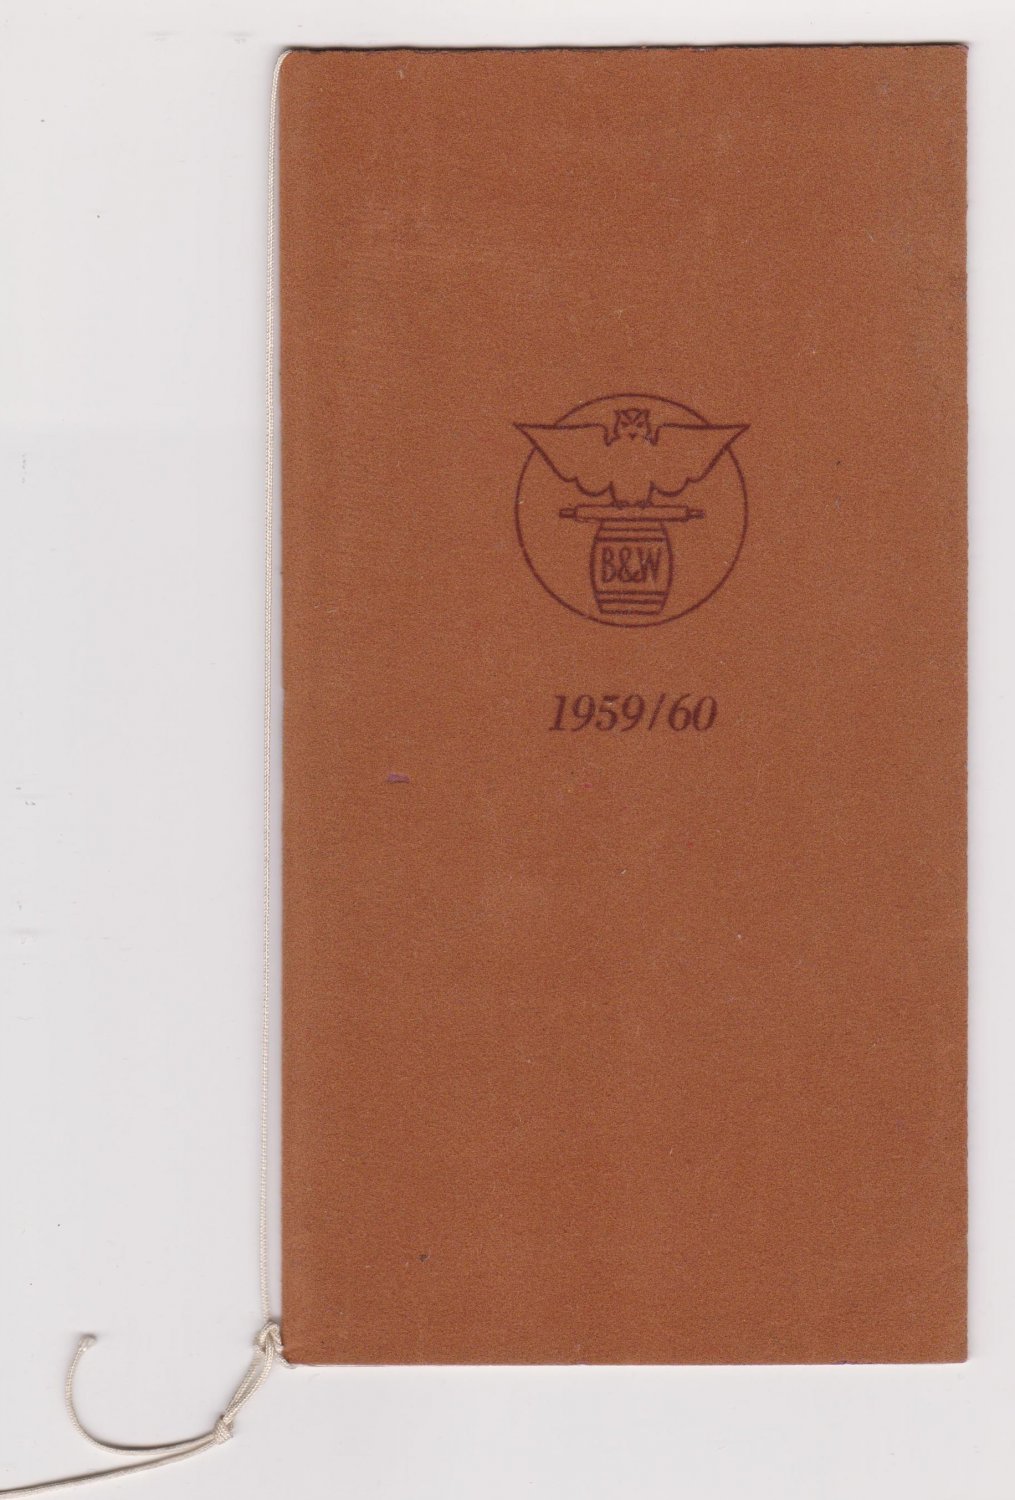 BERGER & WIRTH FARBENFABRIKEN (Hrsg.):  Berger & Wirth Farbenfabriken Jahresgabe 1959/60. Brief Goethes an Schiller, Jena, den 22. Mai 1803 mit Auszügen aus "Goethes Farbenlehre". 